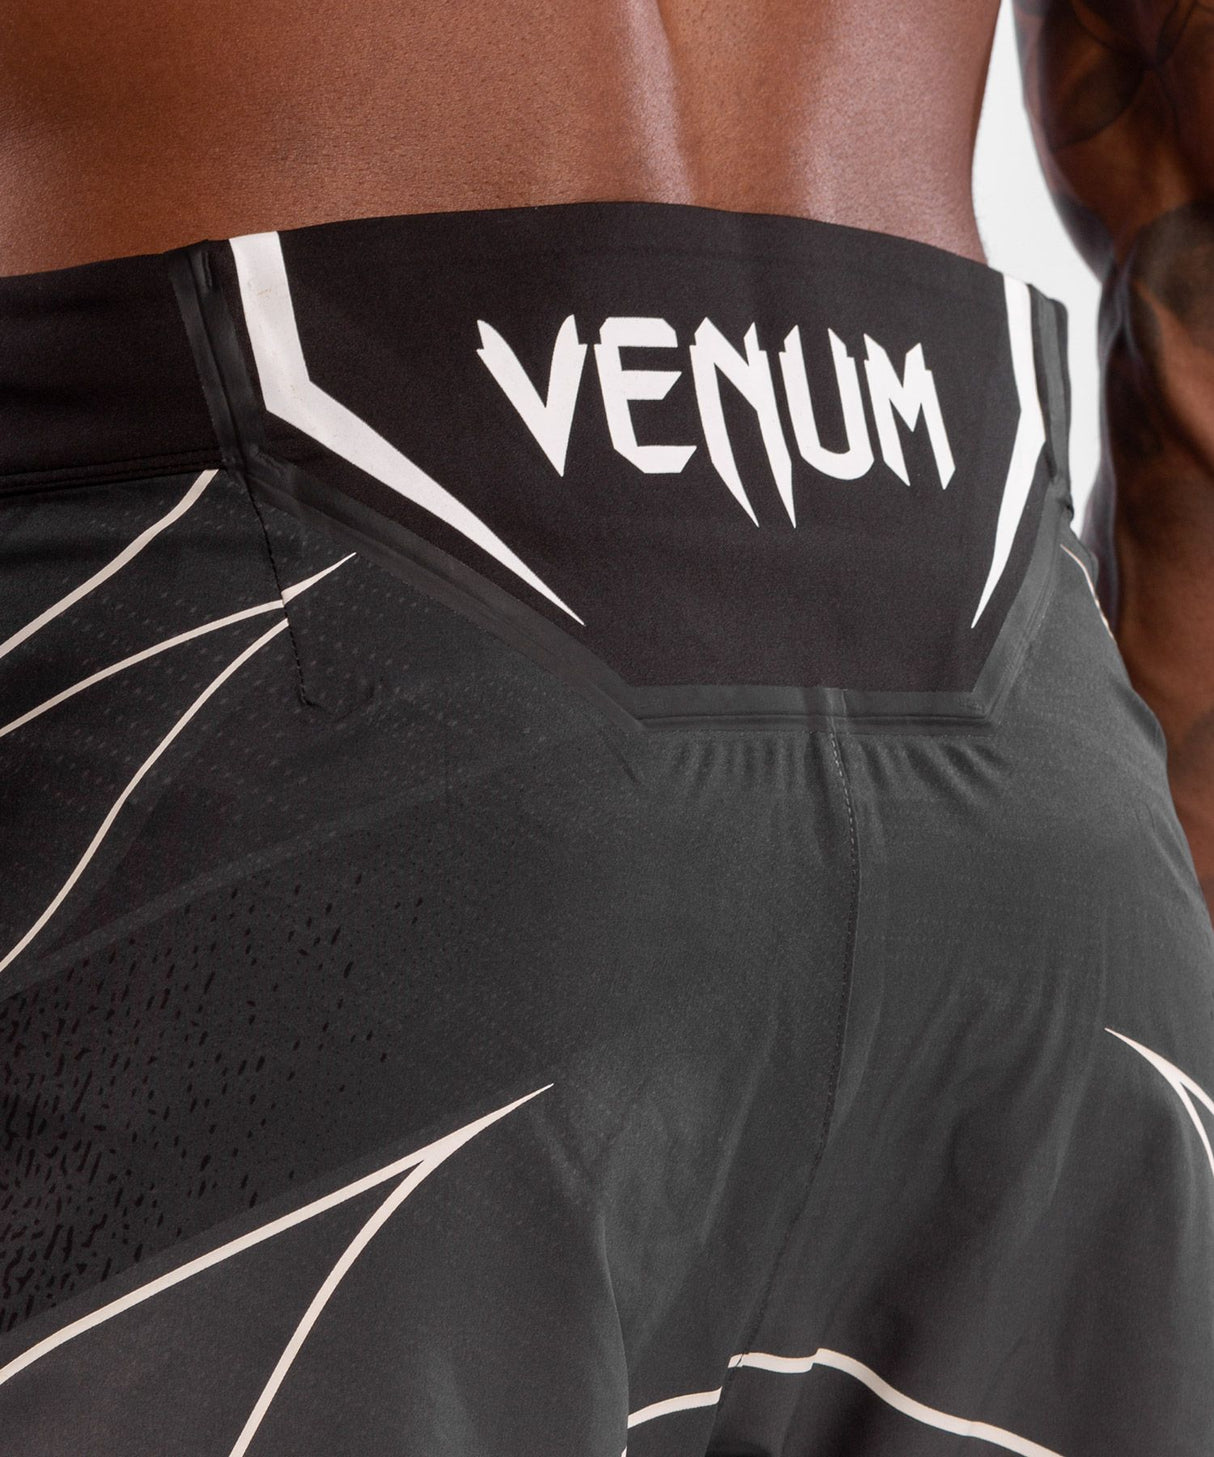 Short Venum MMA UFC Authentic Fight Night - noir